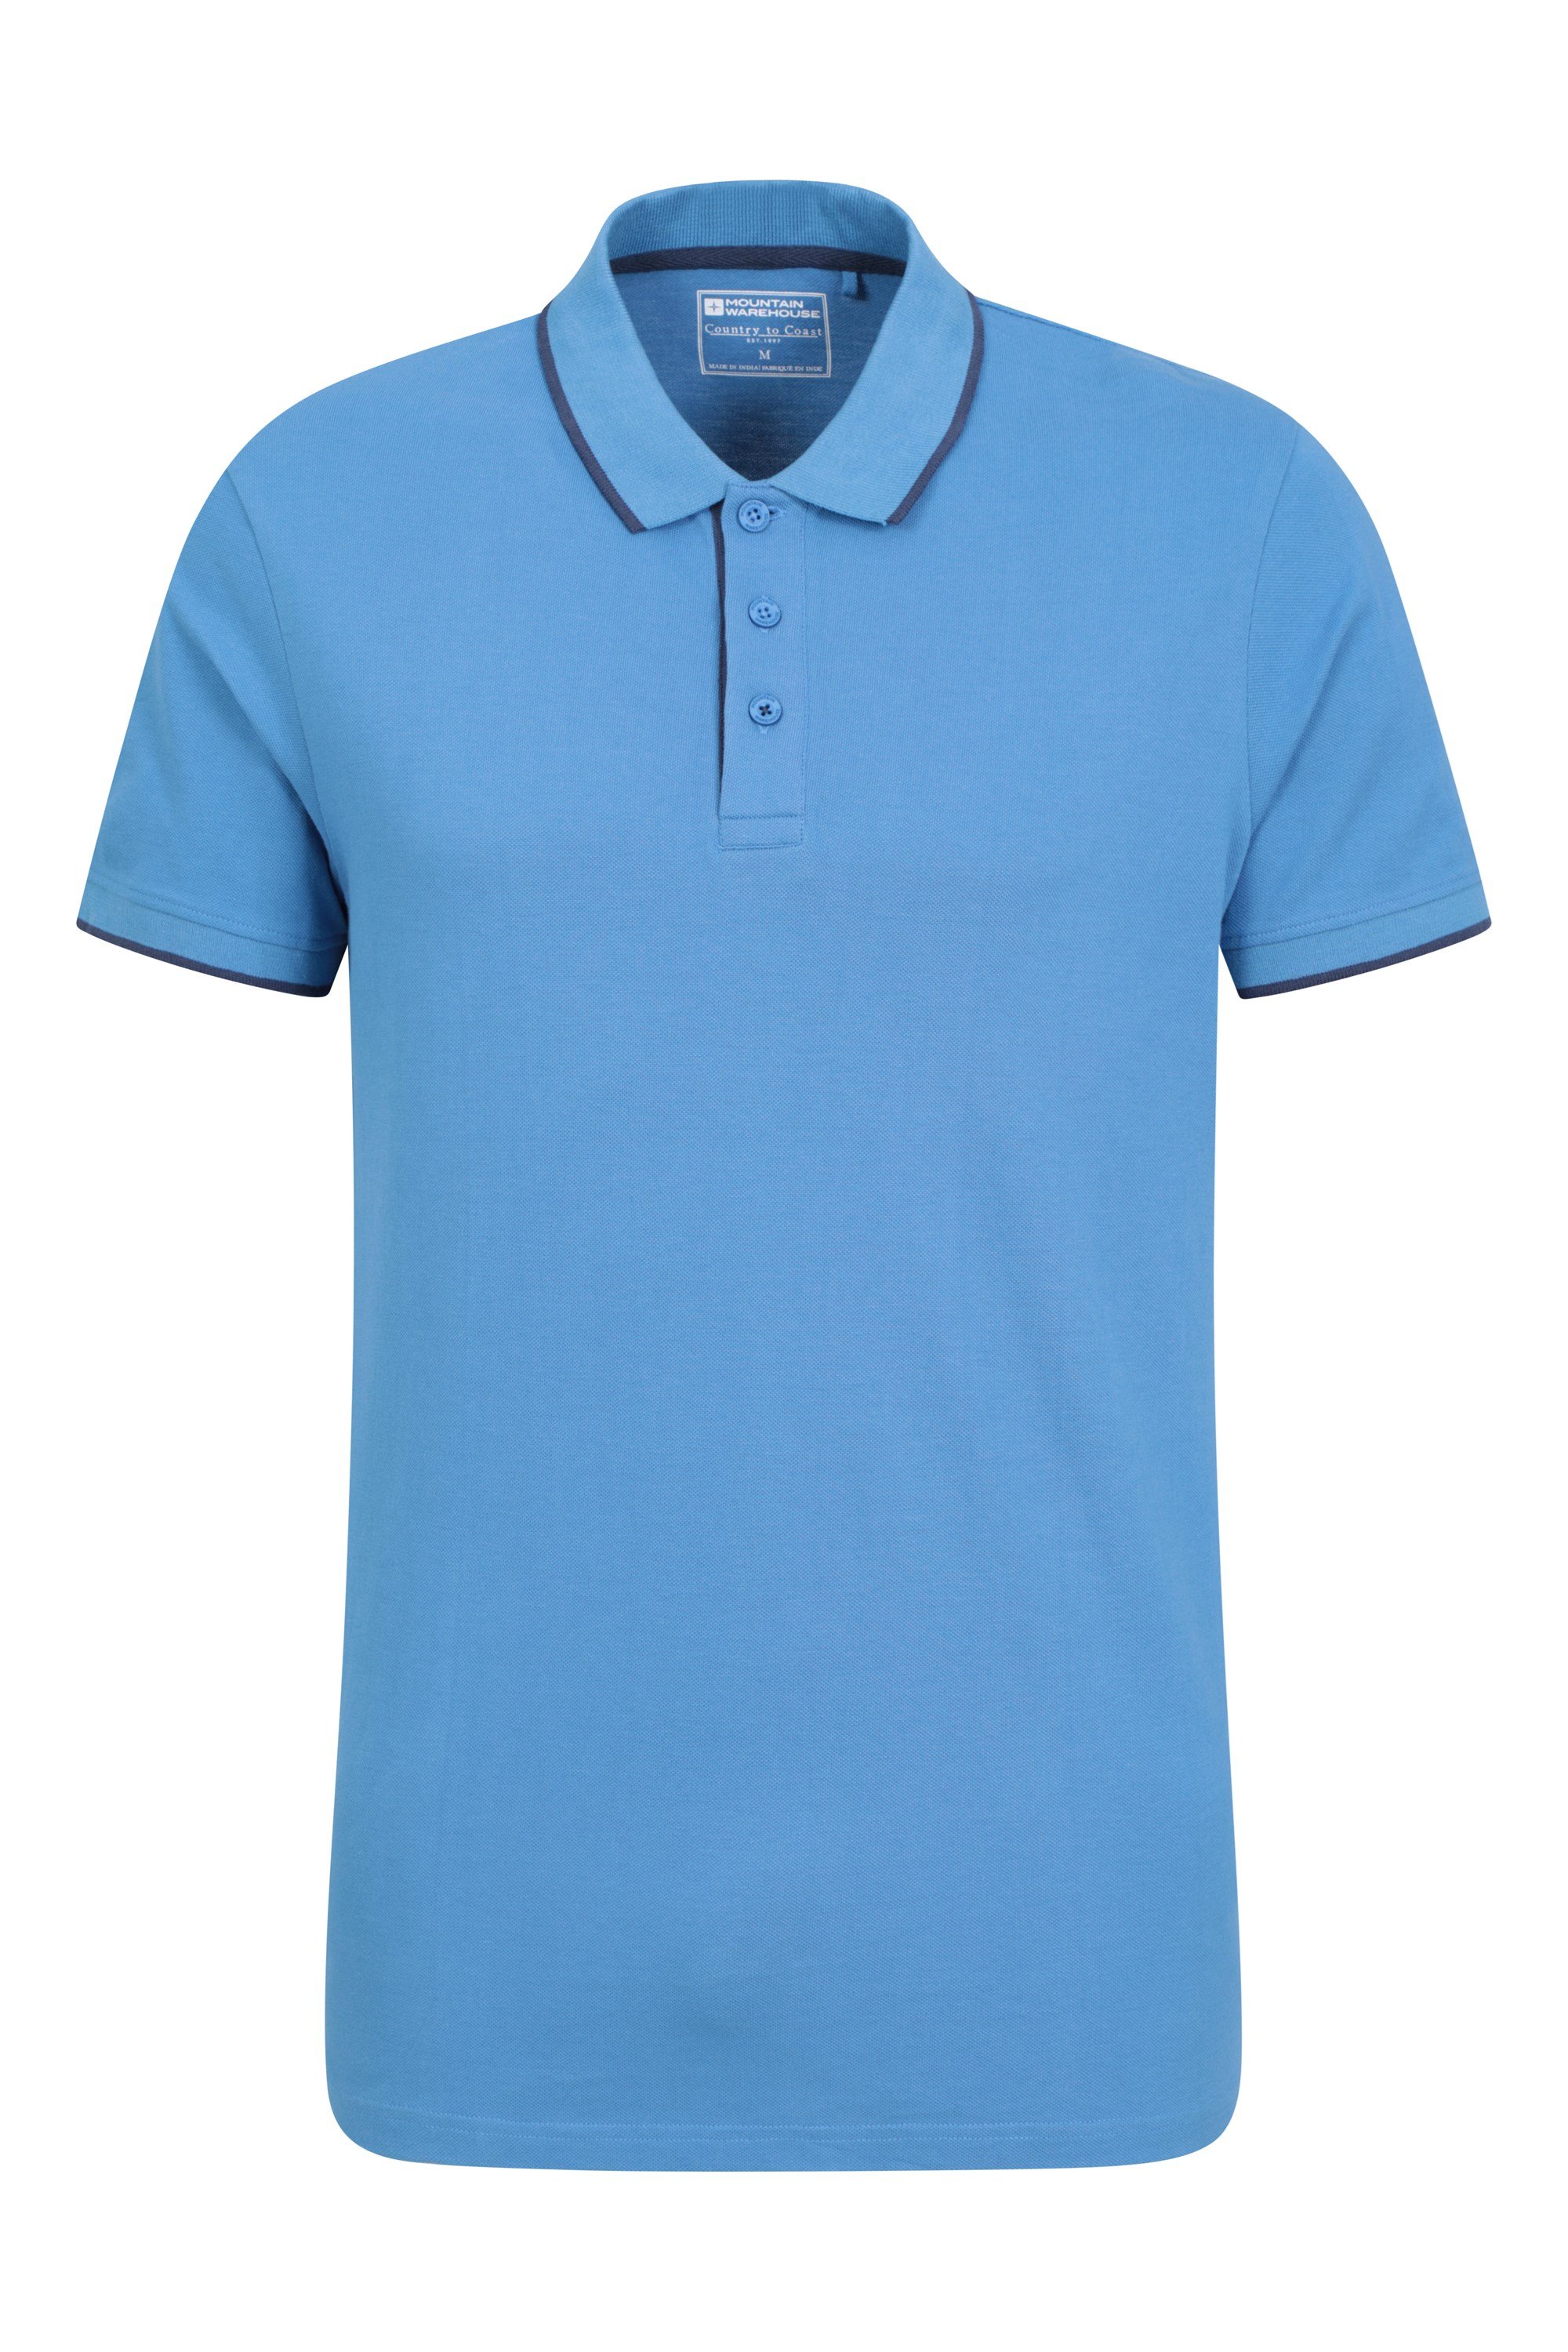 Lakeside Ii Mens Polo Shirt - Blue